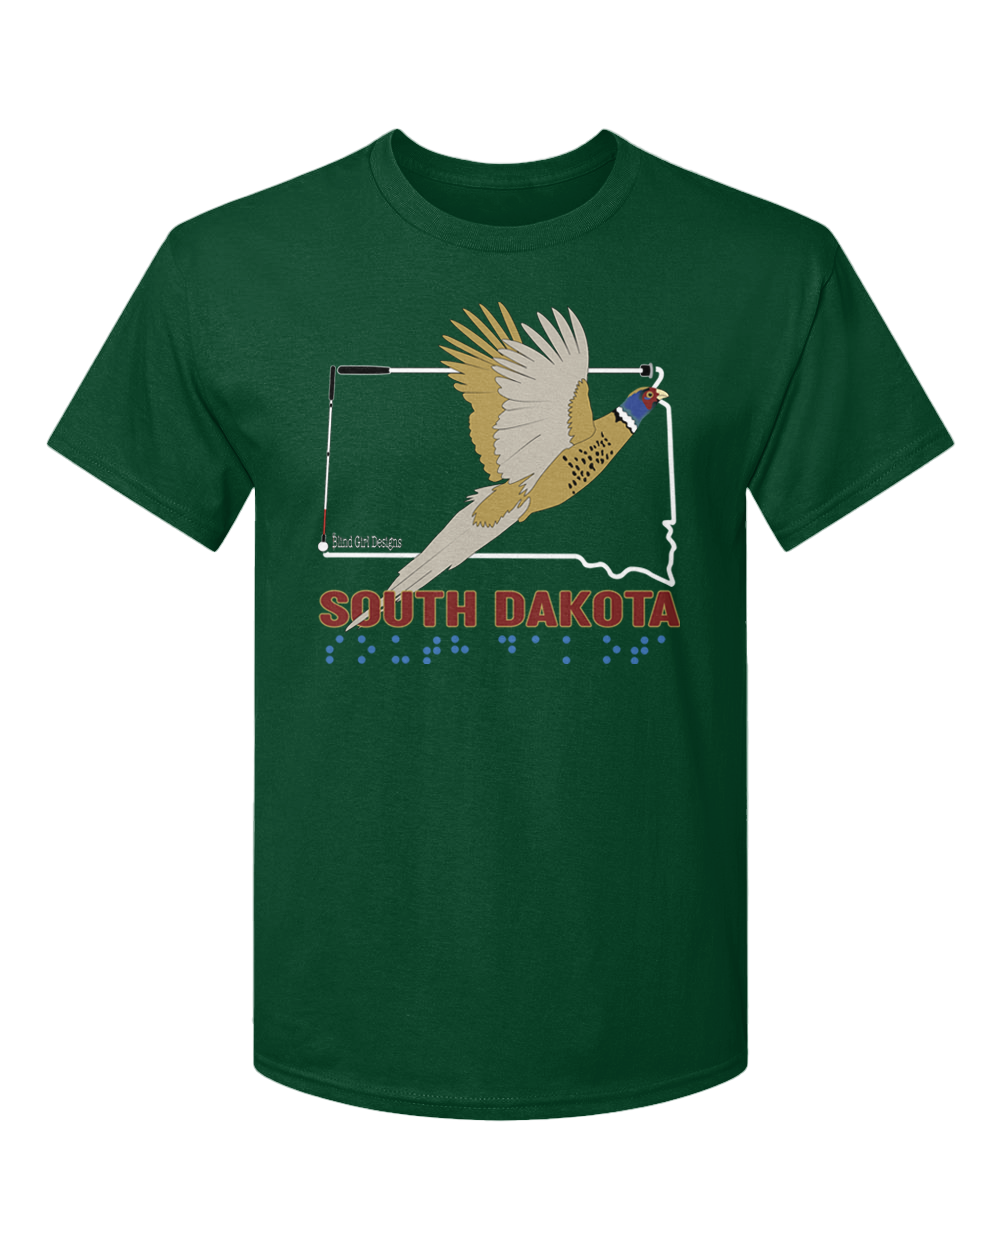 South Dakota T-Shirt - Forest Green